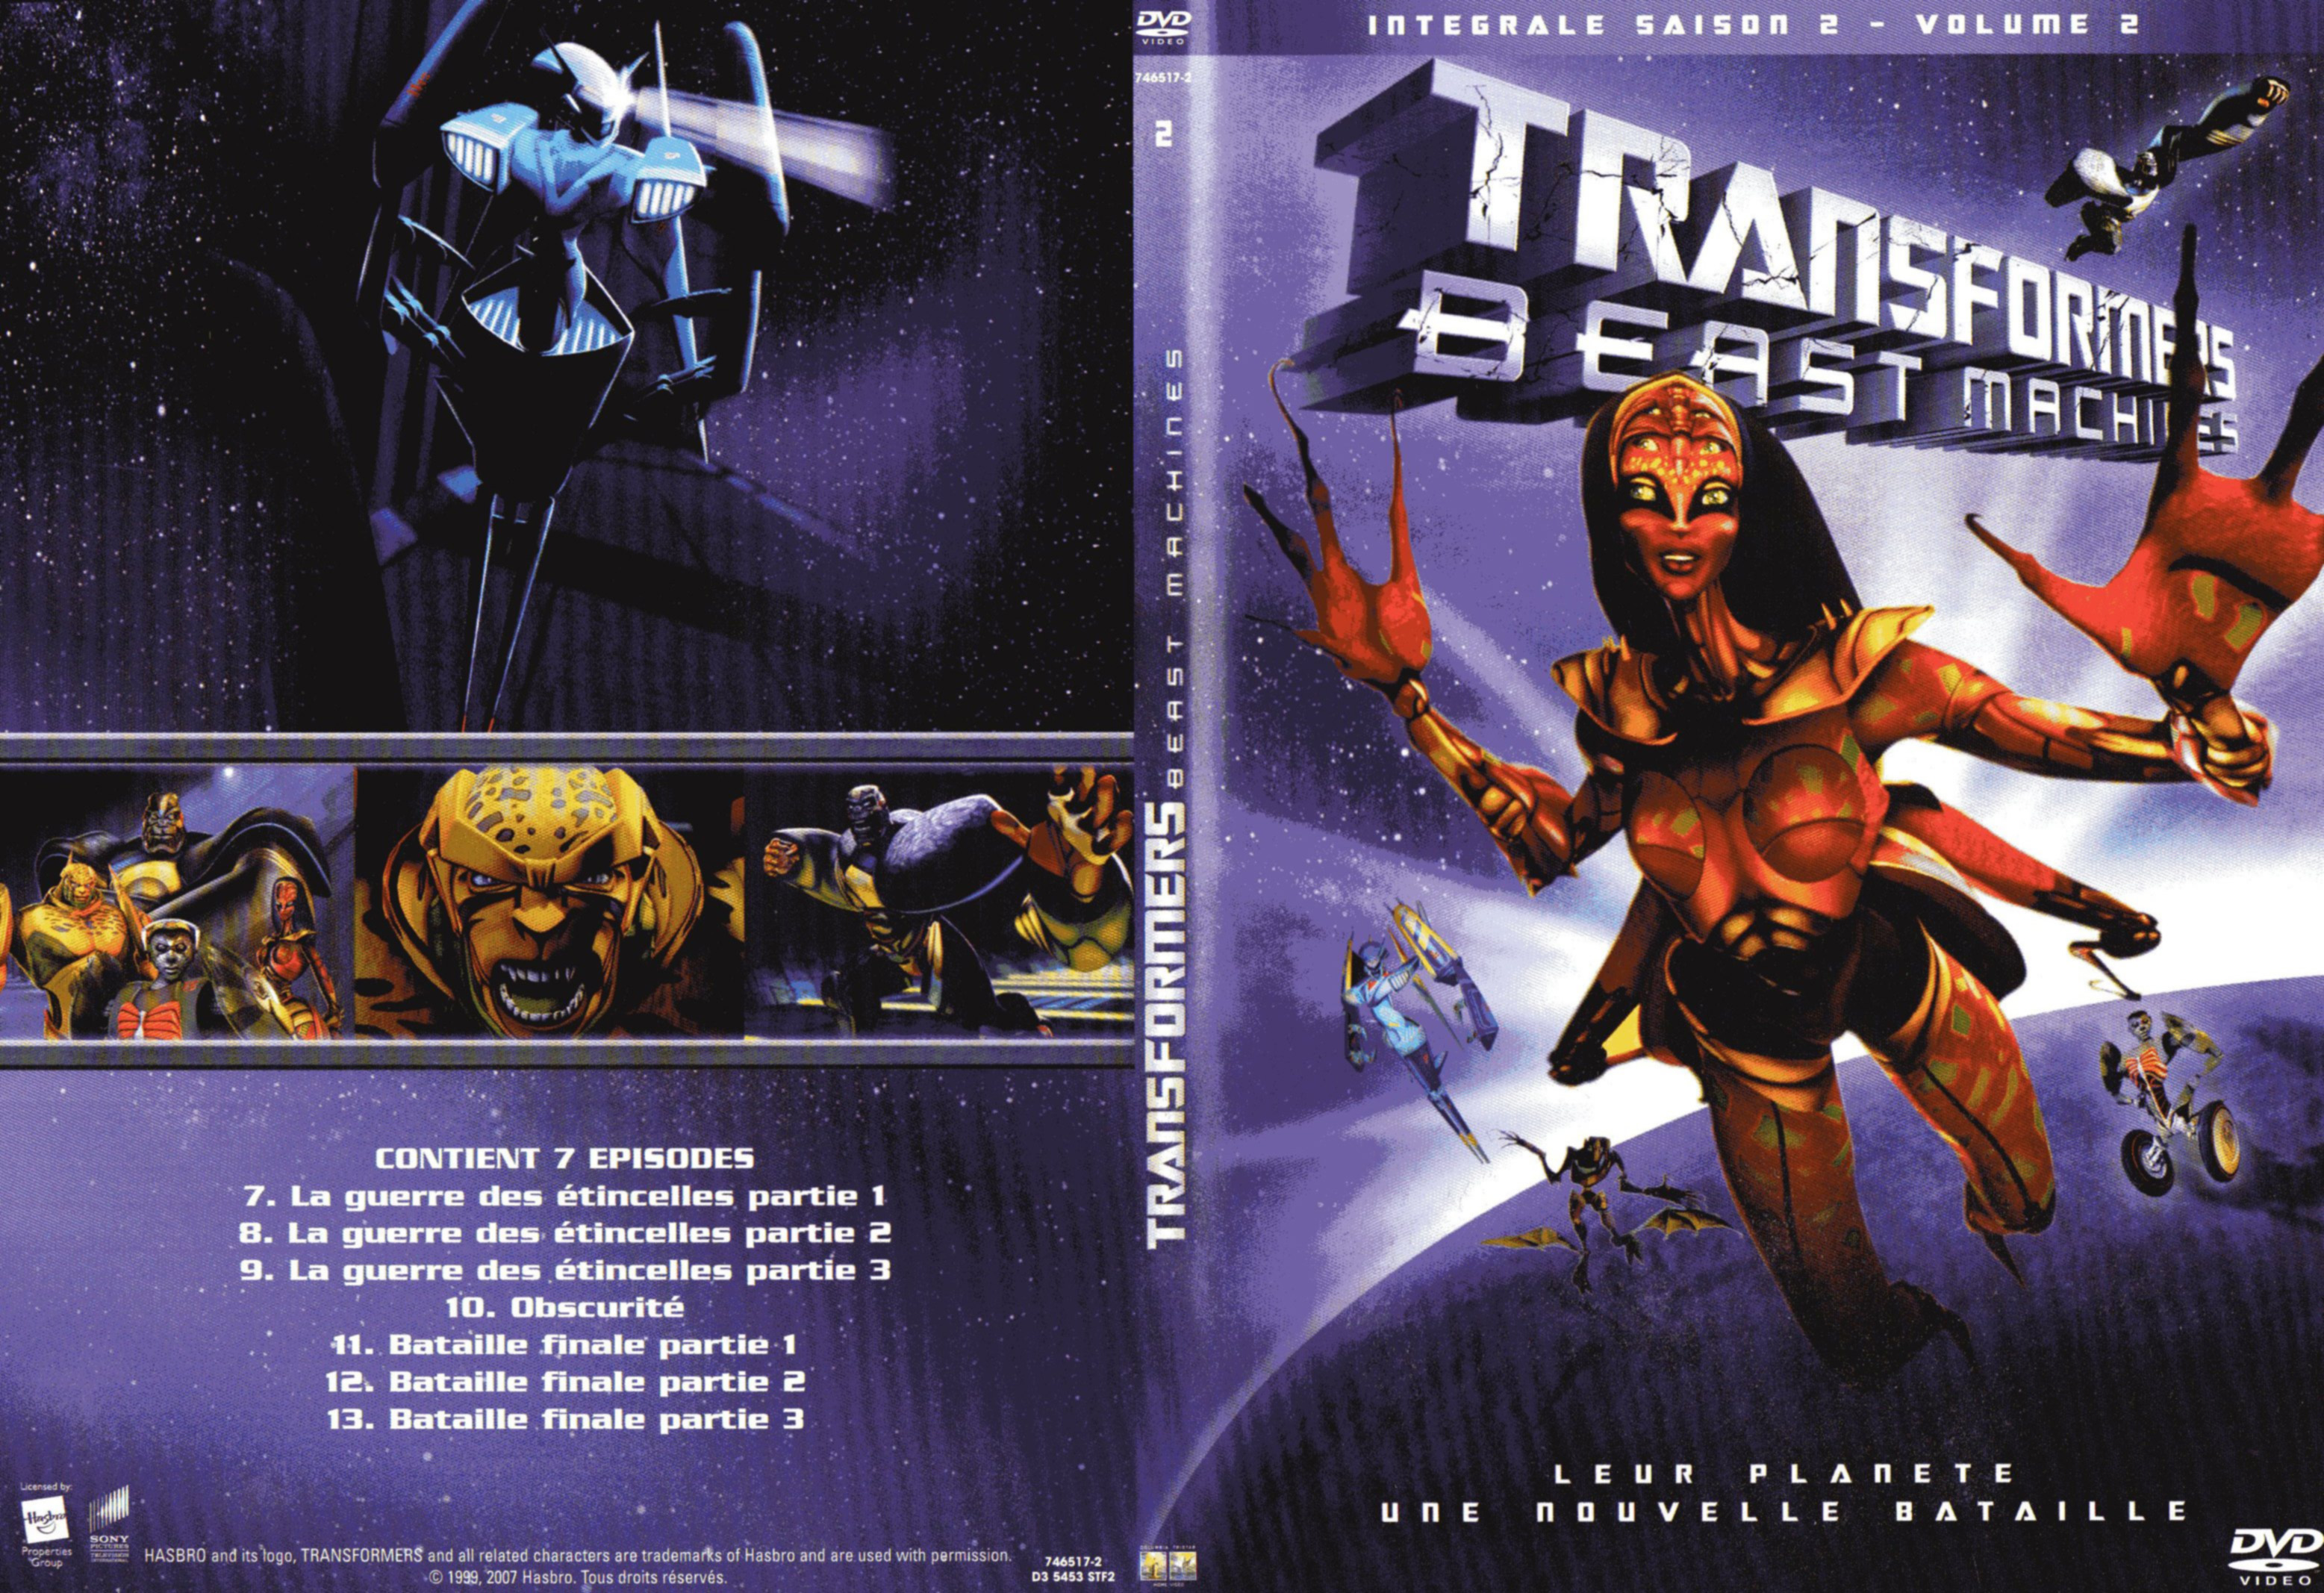 Jaquette DVD Transformers beast machine Saison 2 DVD 2